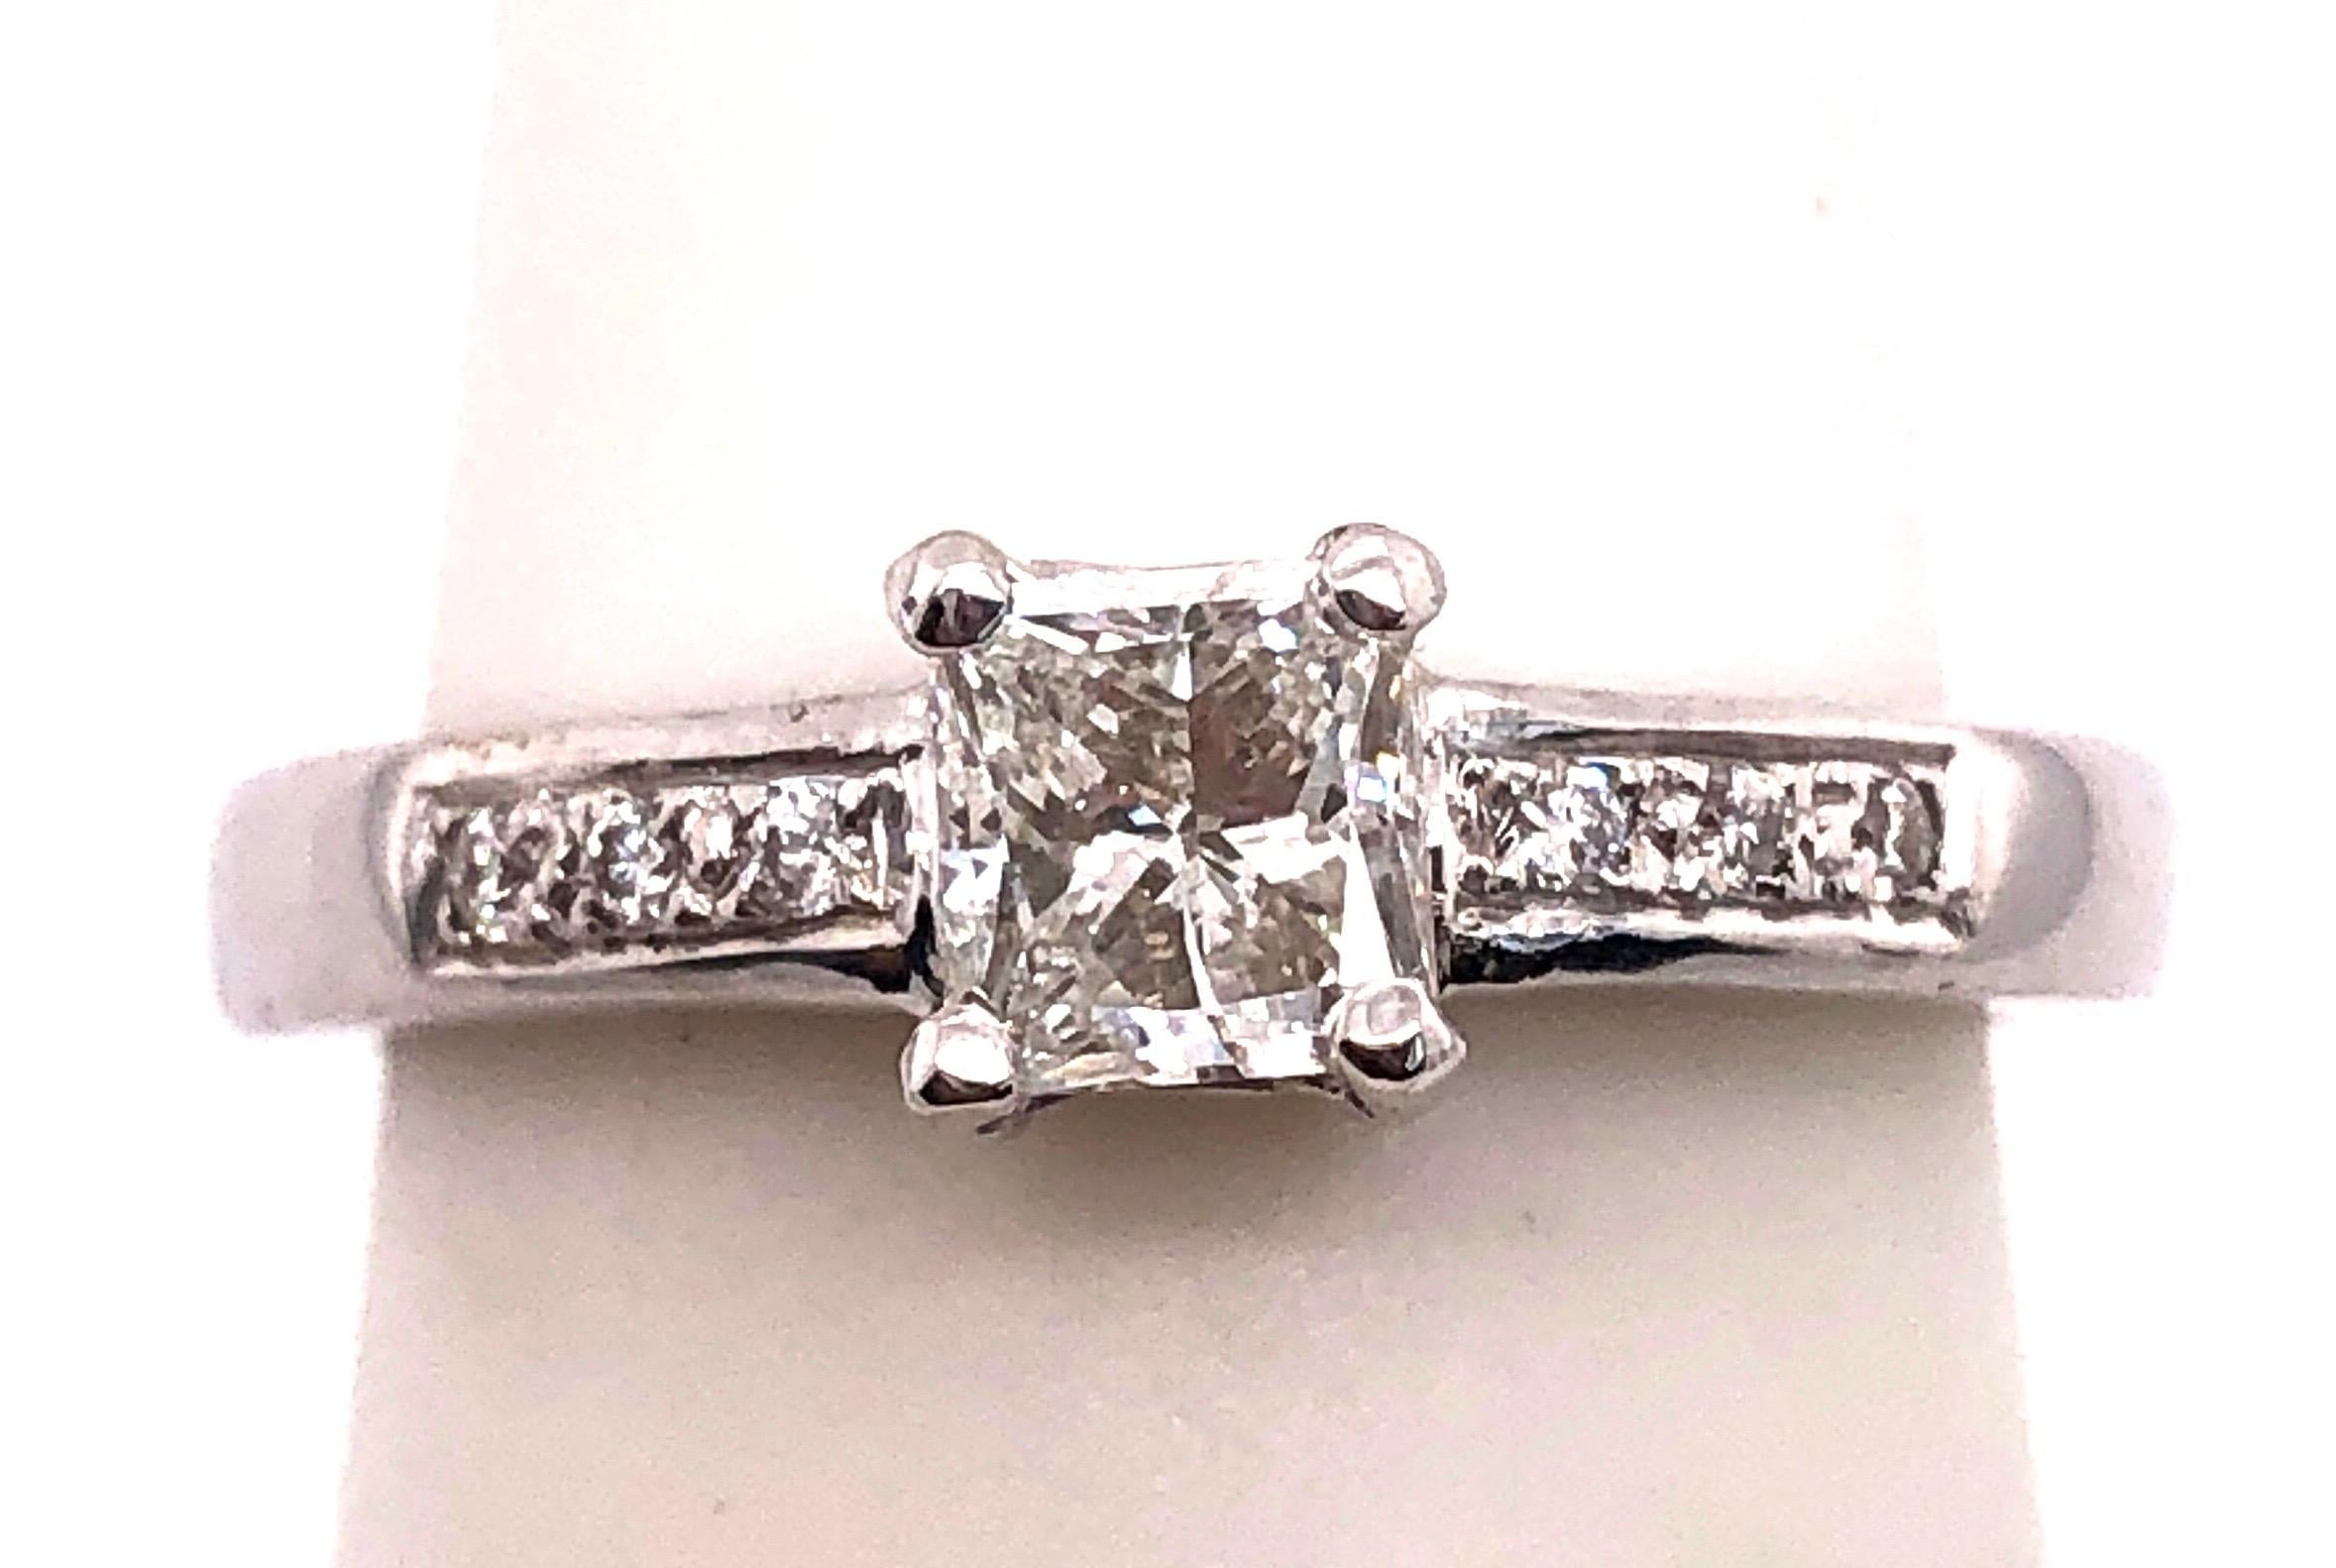 18 Karat White Gold Diamond Engagement Ring 0.80 Total Diamond Weight .
Size 5.25 
3.04 grams total weight.